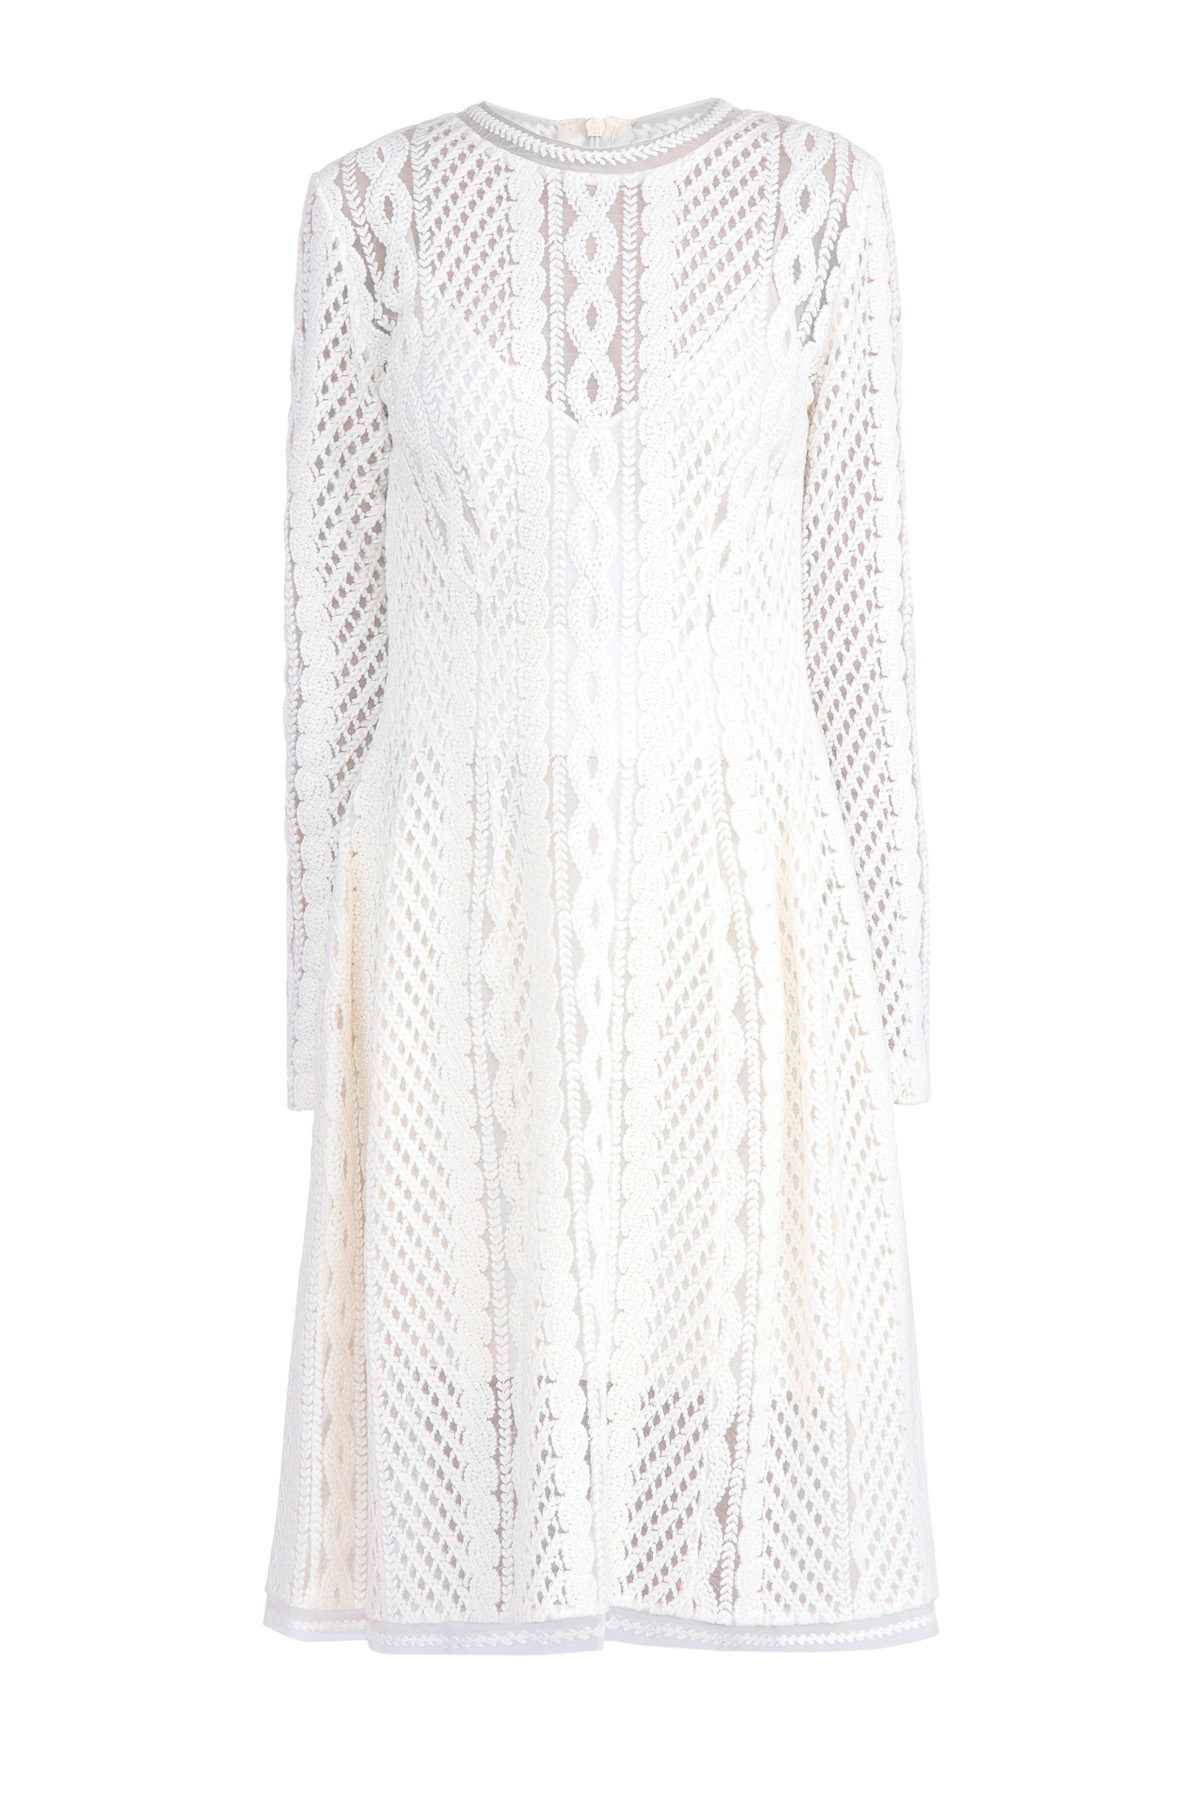 Двухслойное платье из вуали с ажурной вышивкой шерстяной нитью ERMANNO SCERVINO, цвет белый, размер 42 - фото 1